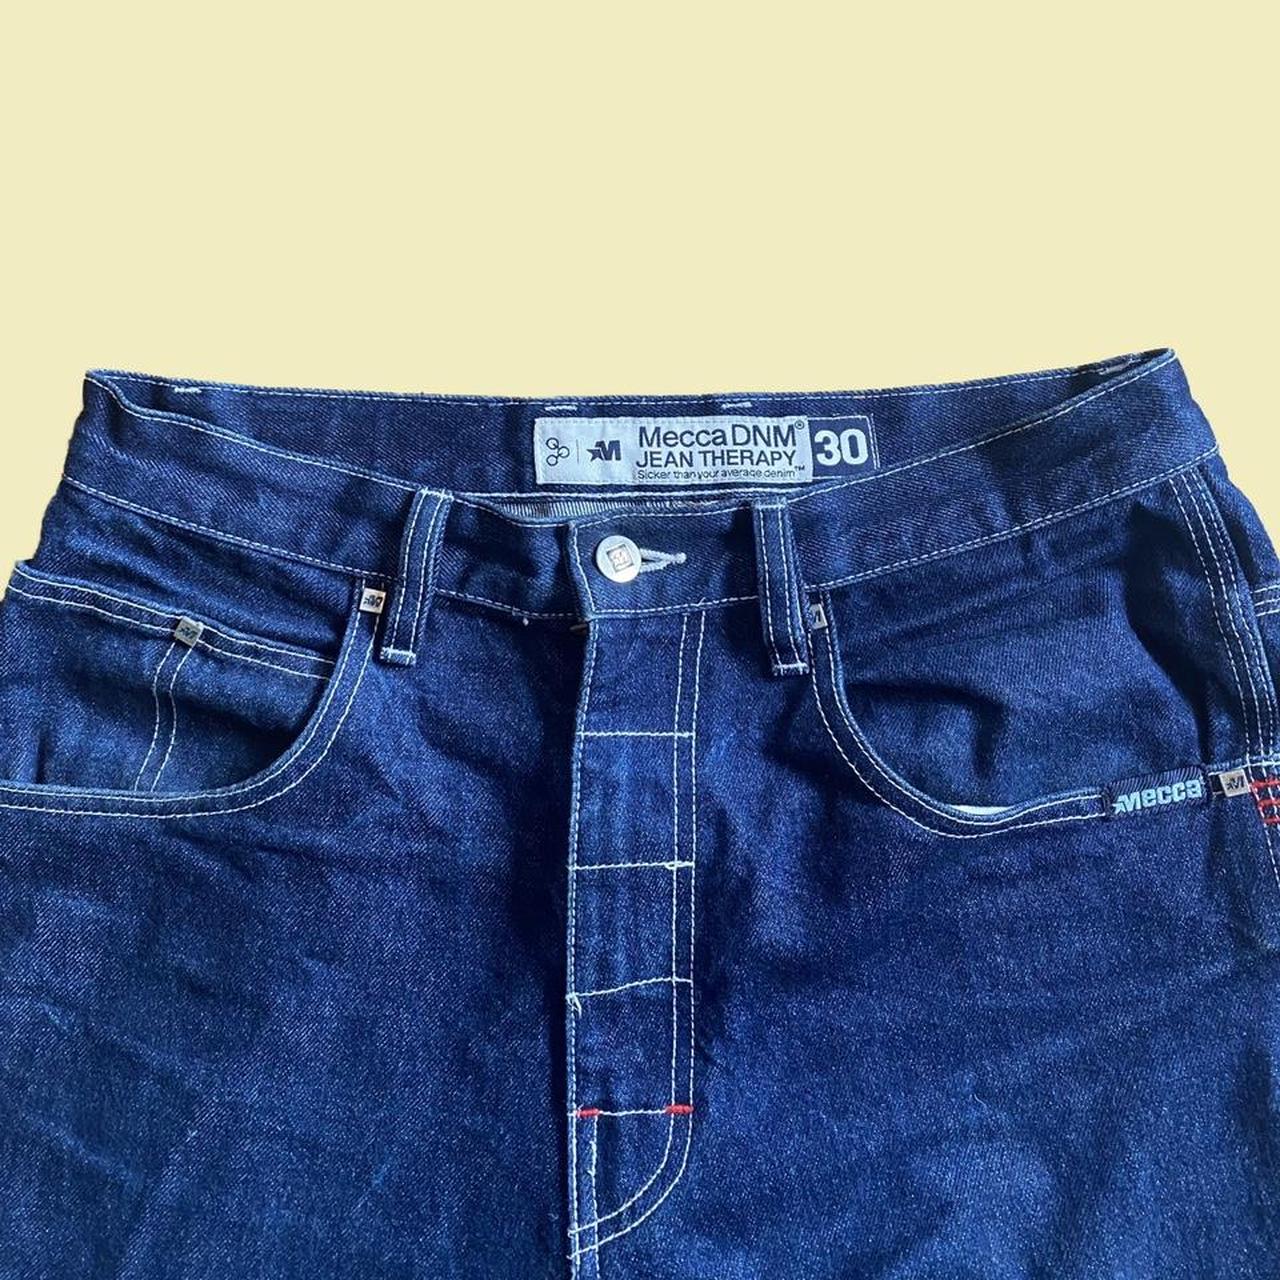 Mecca DNM baggy jeans Waist 30/ length... - Depop